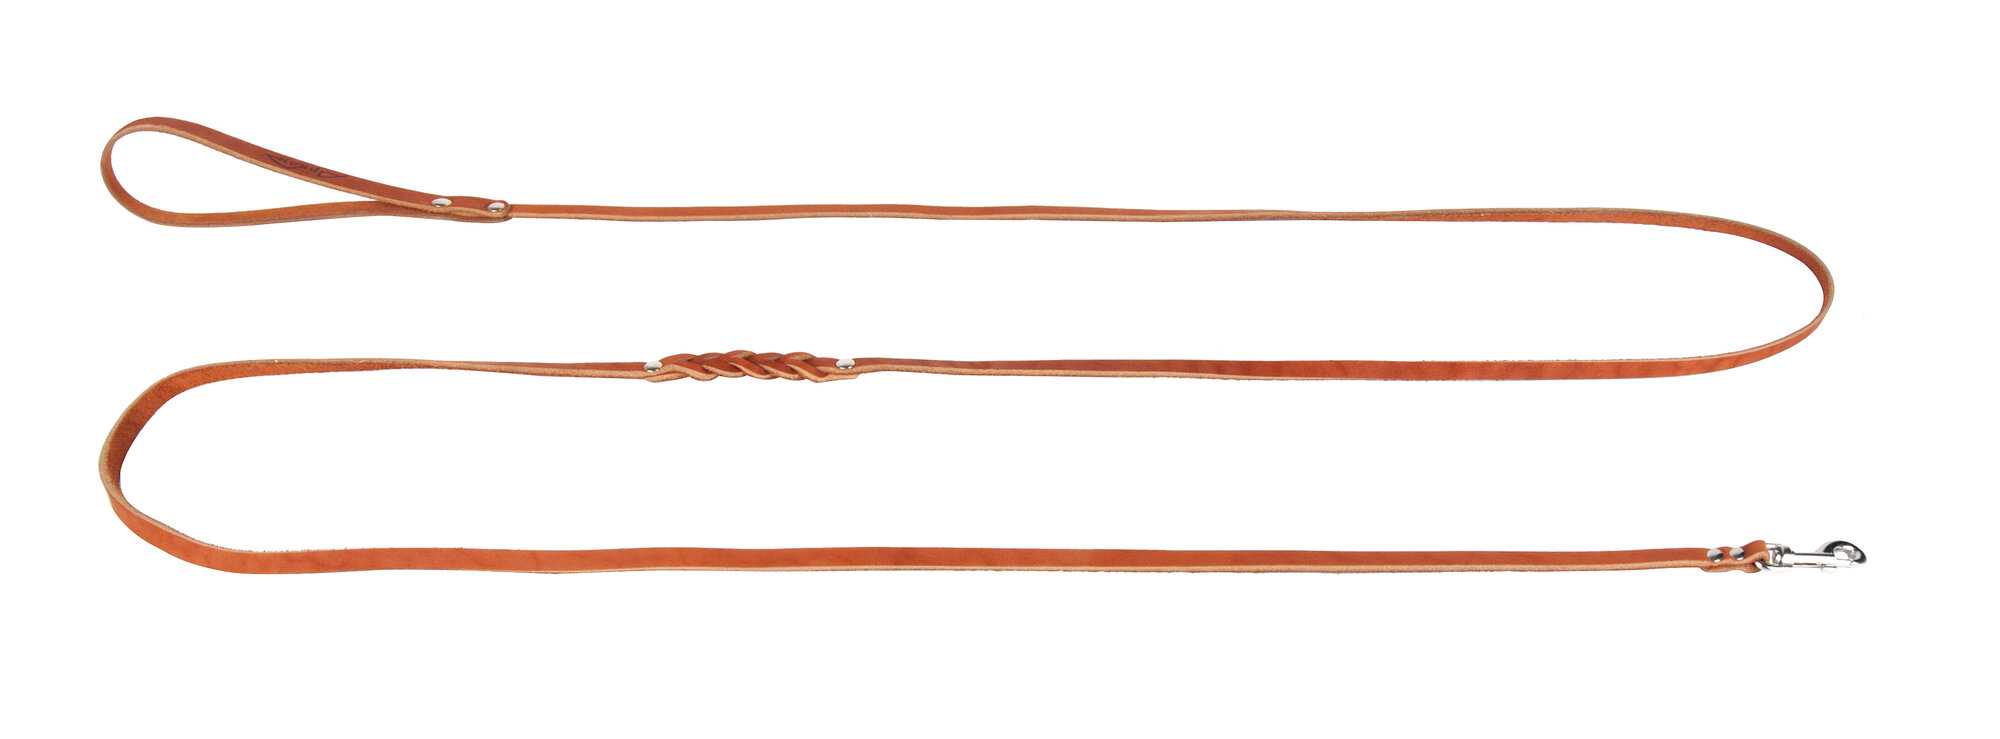 Поводок аркон кожаный 2.5м х 8мм плетение посередине, цвет Коньячный